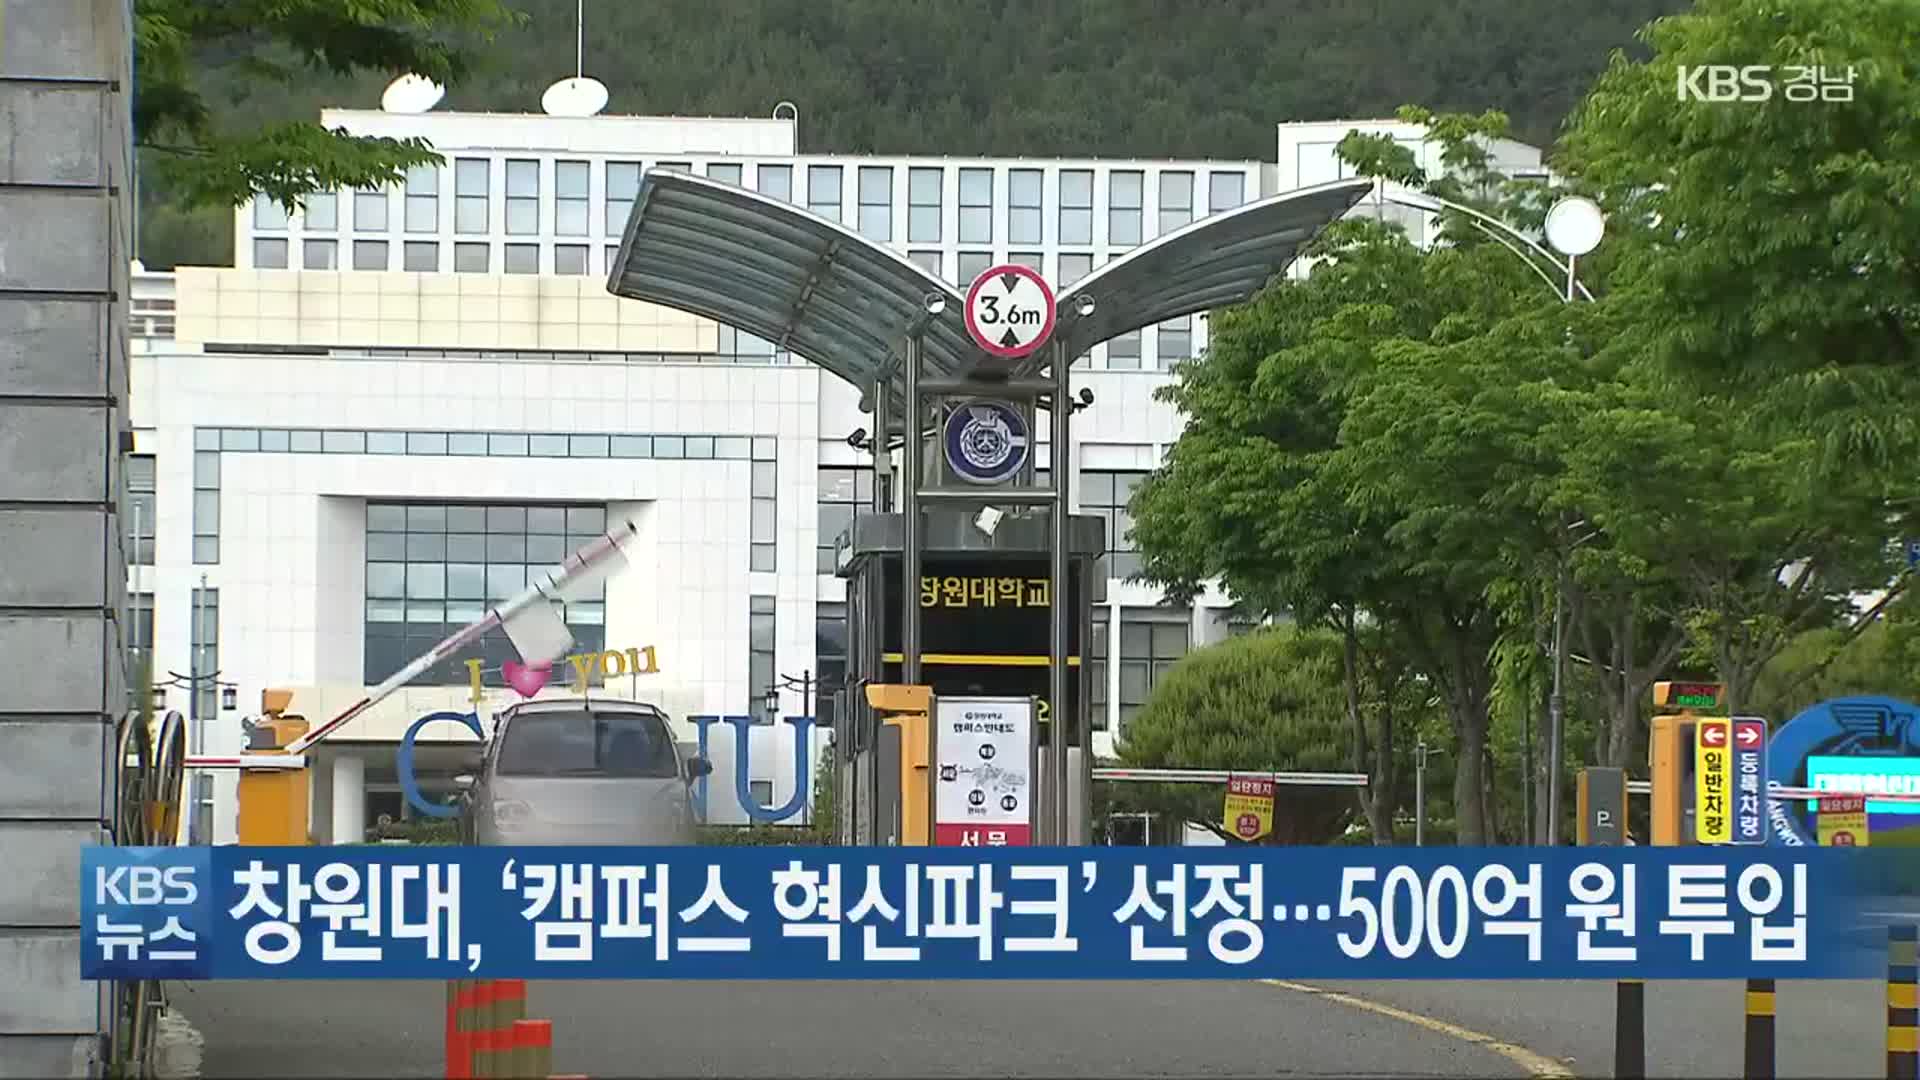 창원대, ‘캠퍼스 혁신파크’ 선정…500억 원 투입